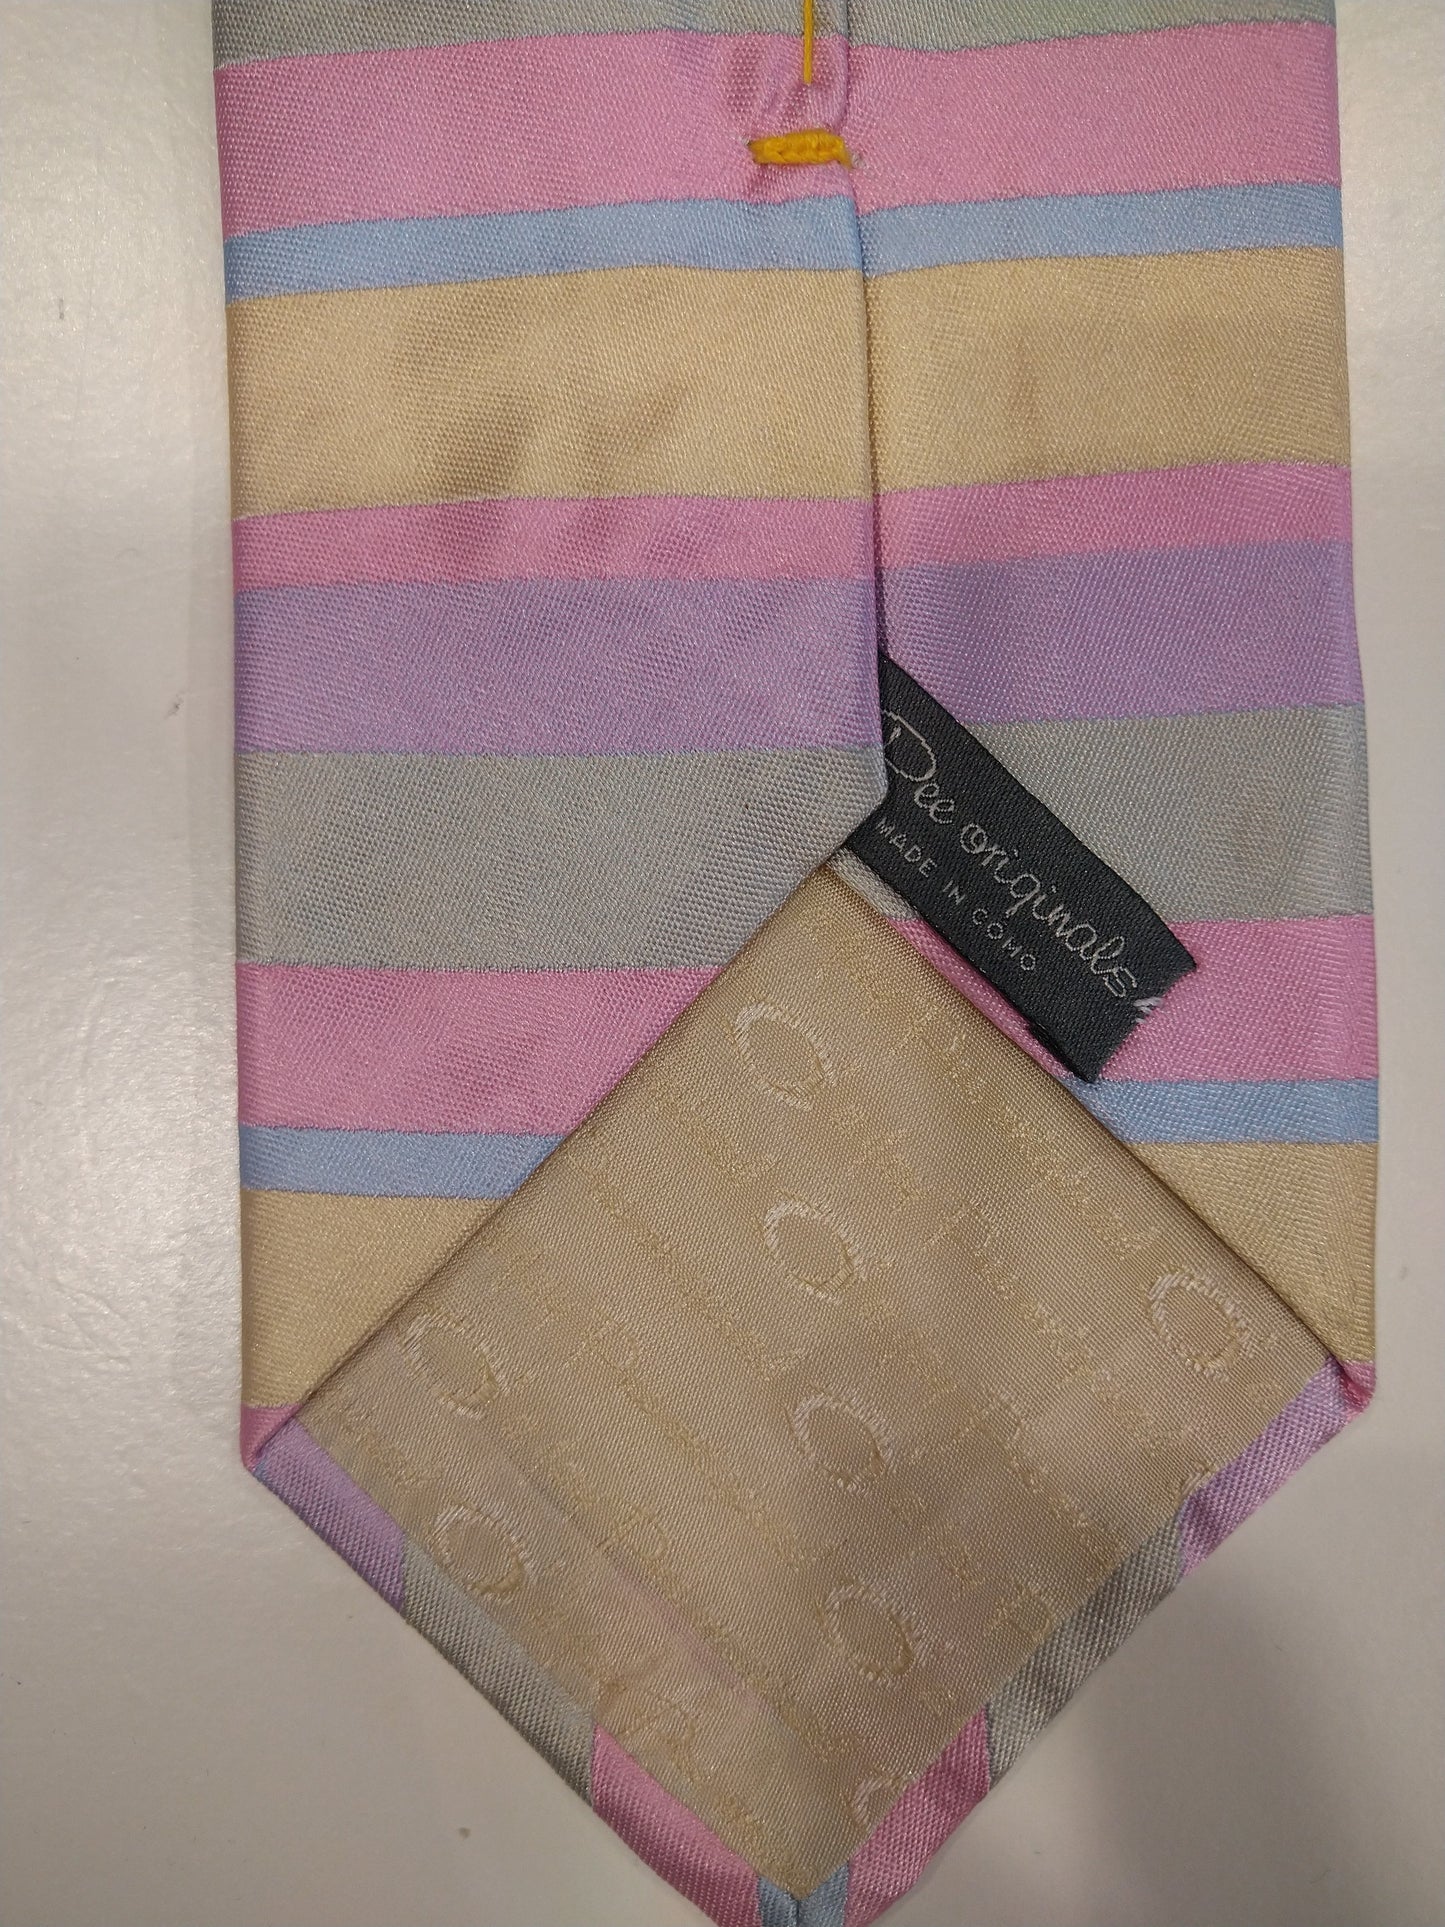 La mano di Jay Pee fatta in cravatta di seta Como. Rosa / viola / blu / giallo a strisce.